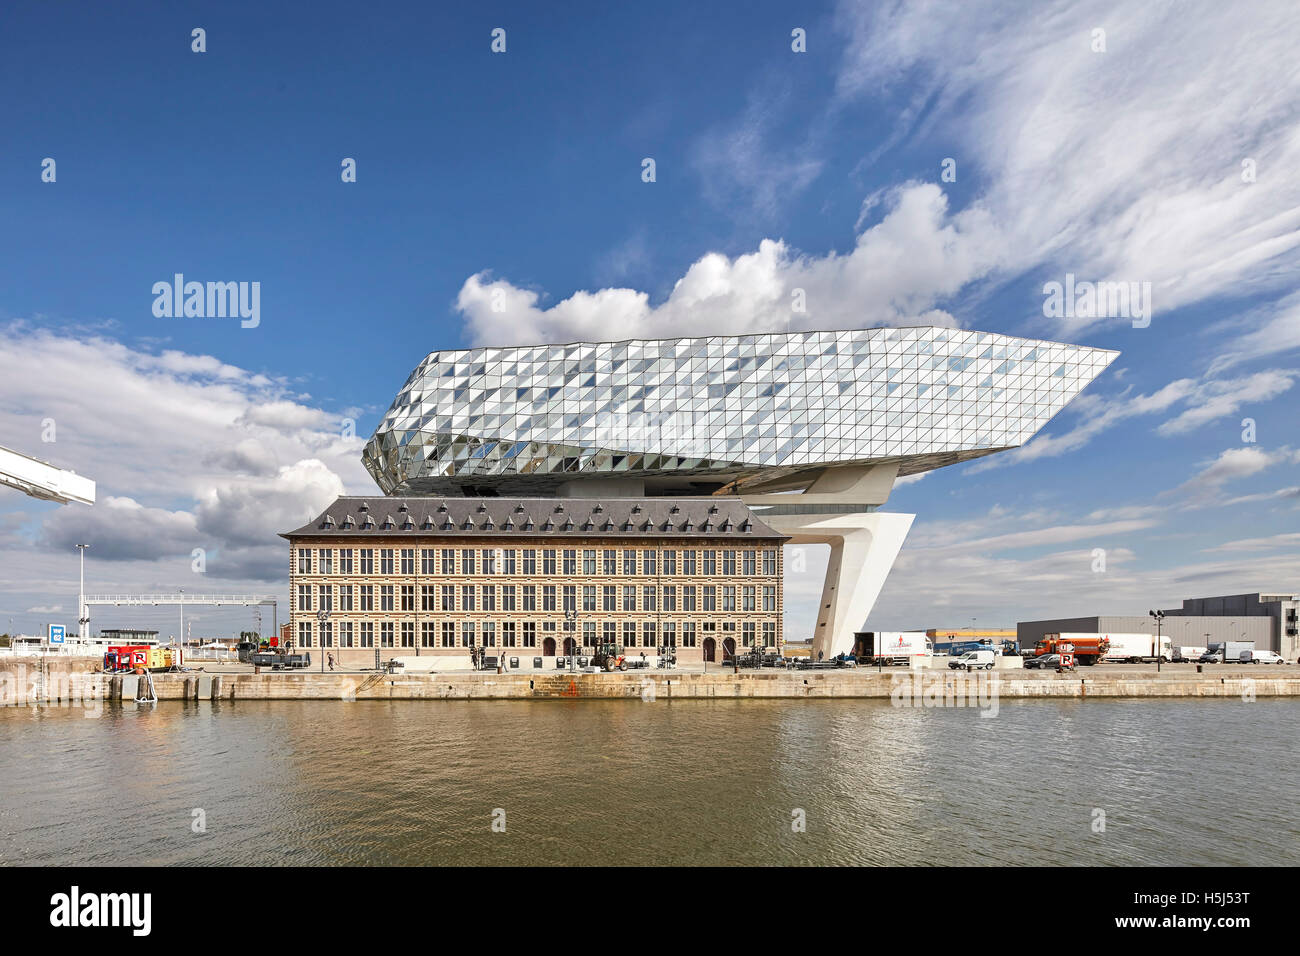 Vista frontale del vecchio e nuovo attraverso waterside. Casa porta ad Anversa, Belgio. Architetto: Zaha Hadid Architects, 2016. Foto Stock